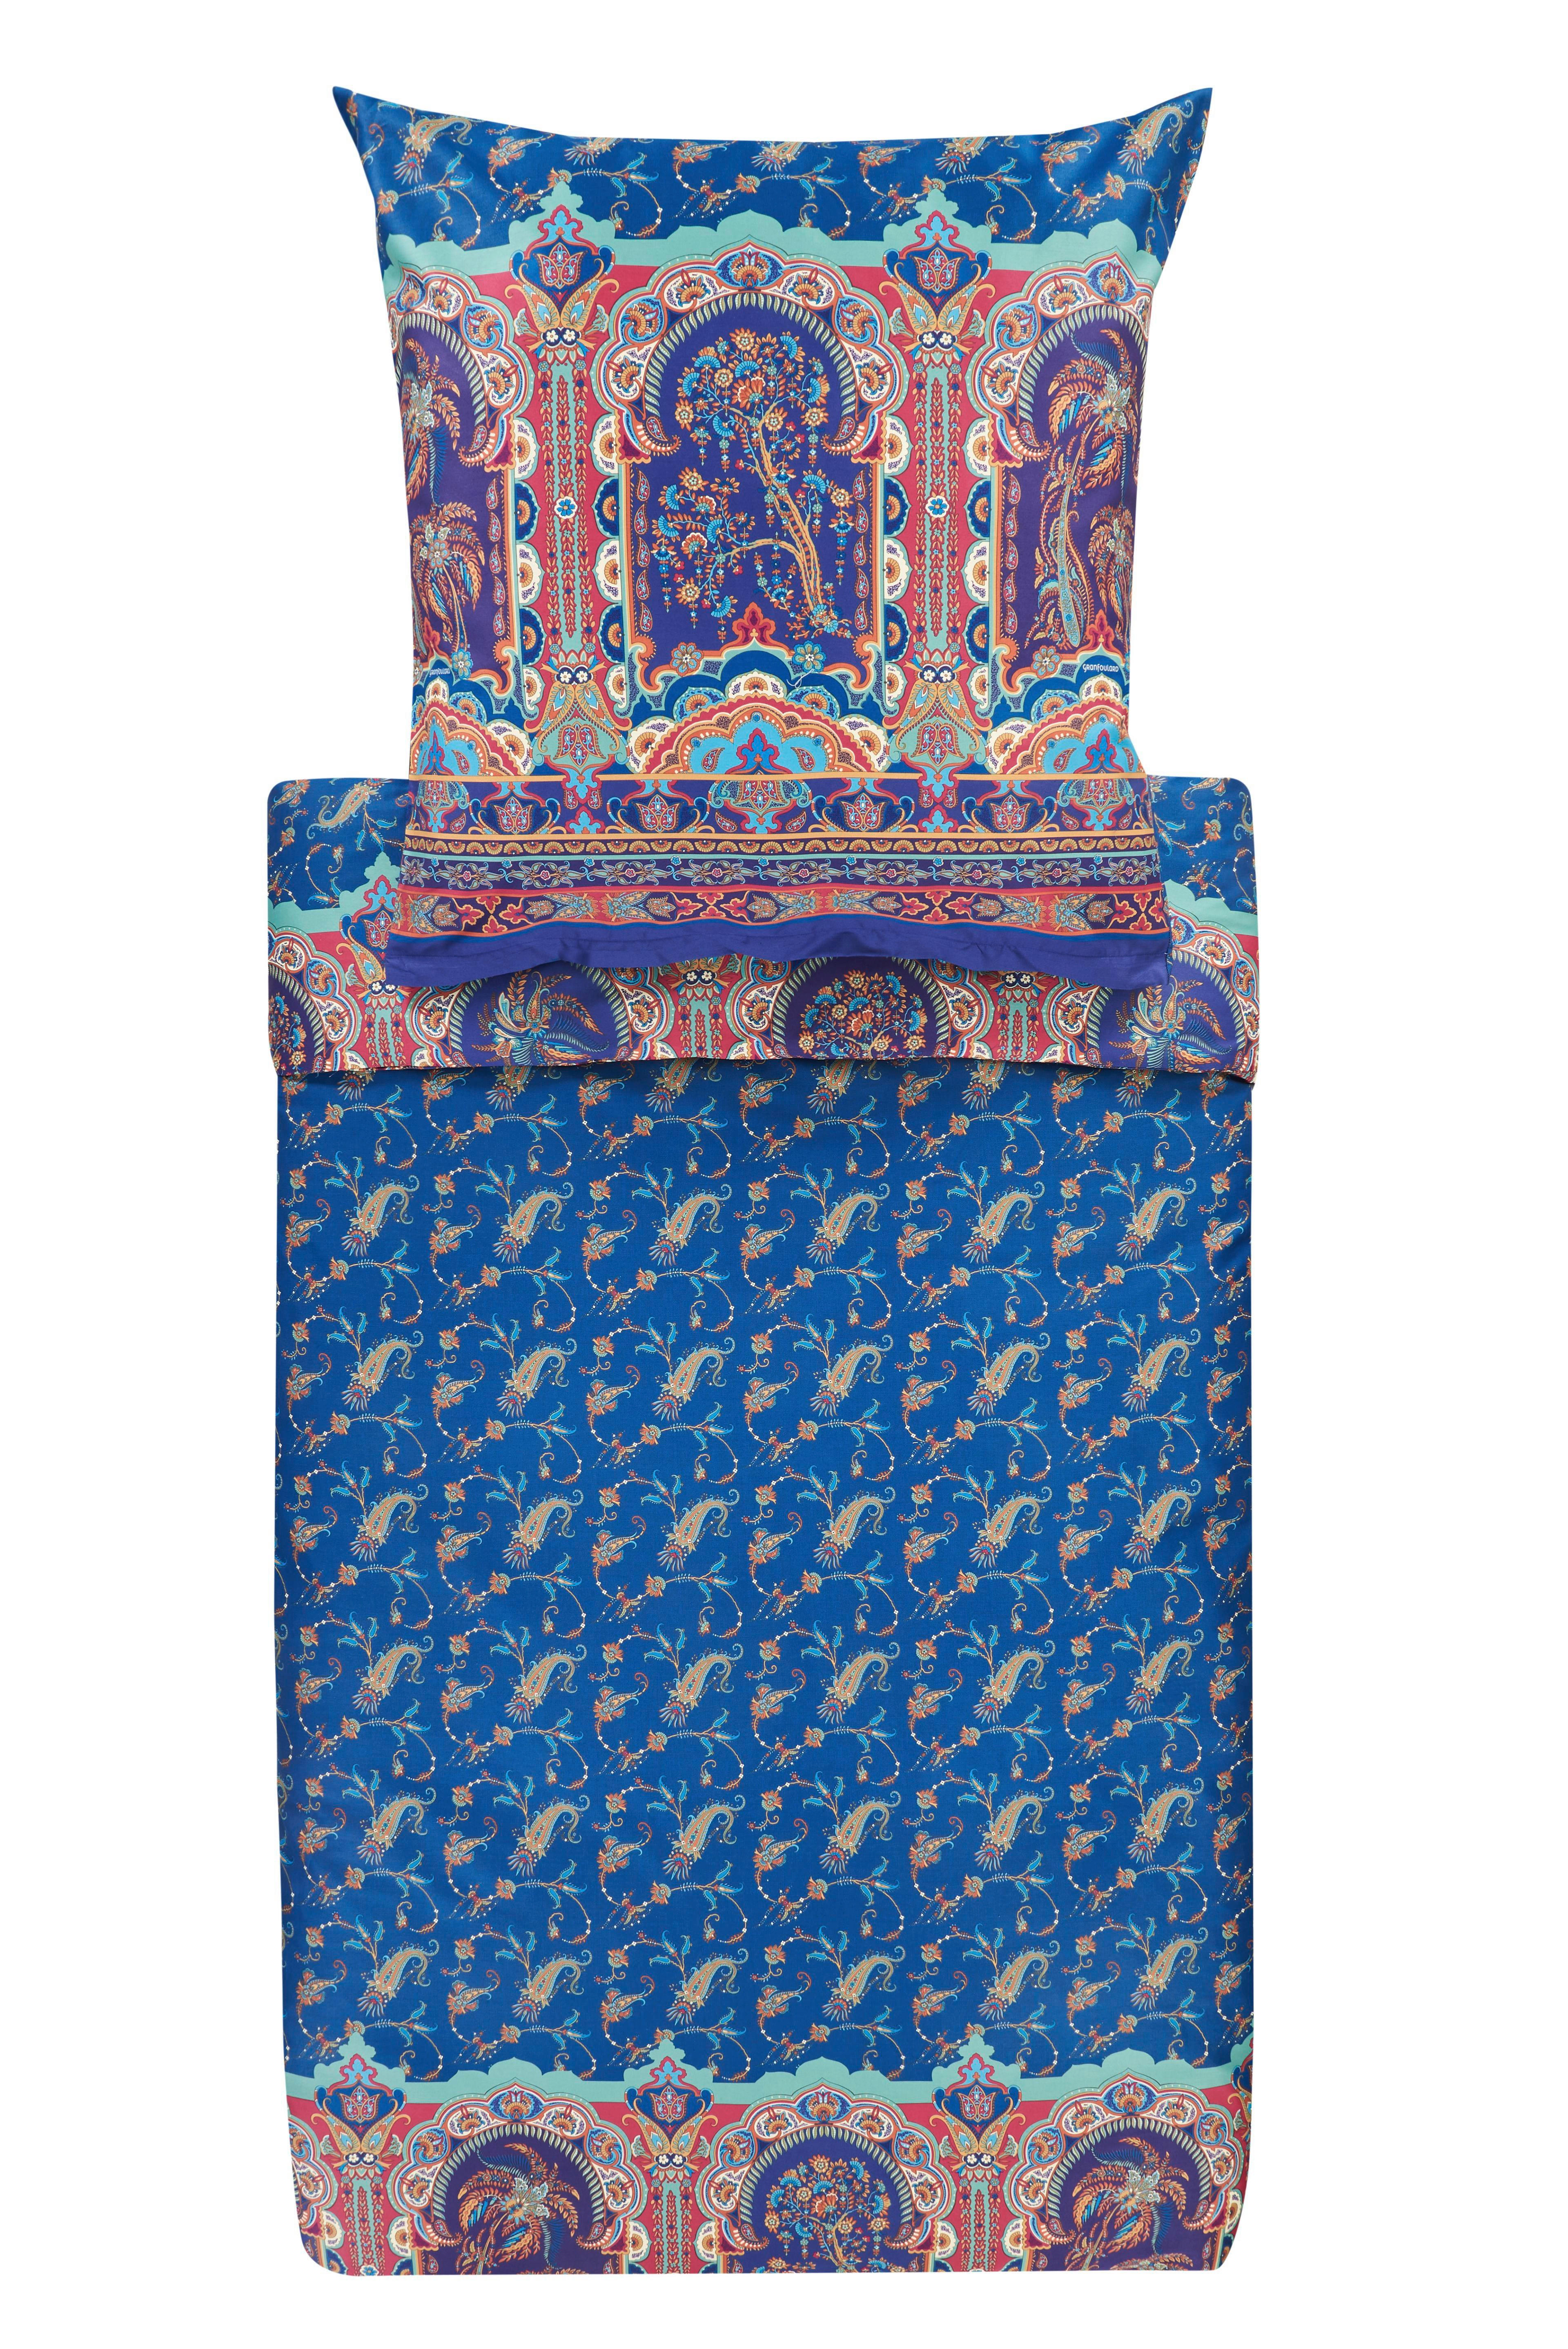 WENDEBETTWÄSCHE Makosatin  - Blau, LIFESTYLE, Textil (200/200cm) - Bassetti